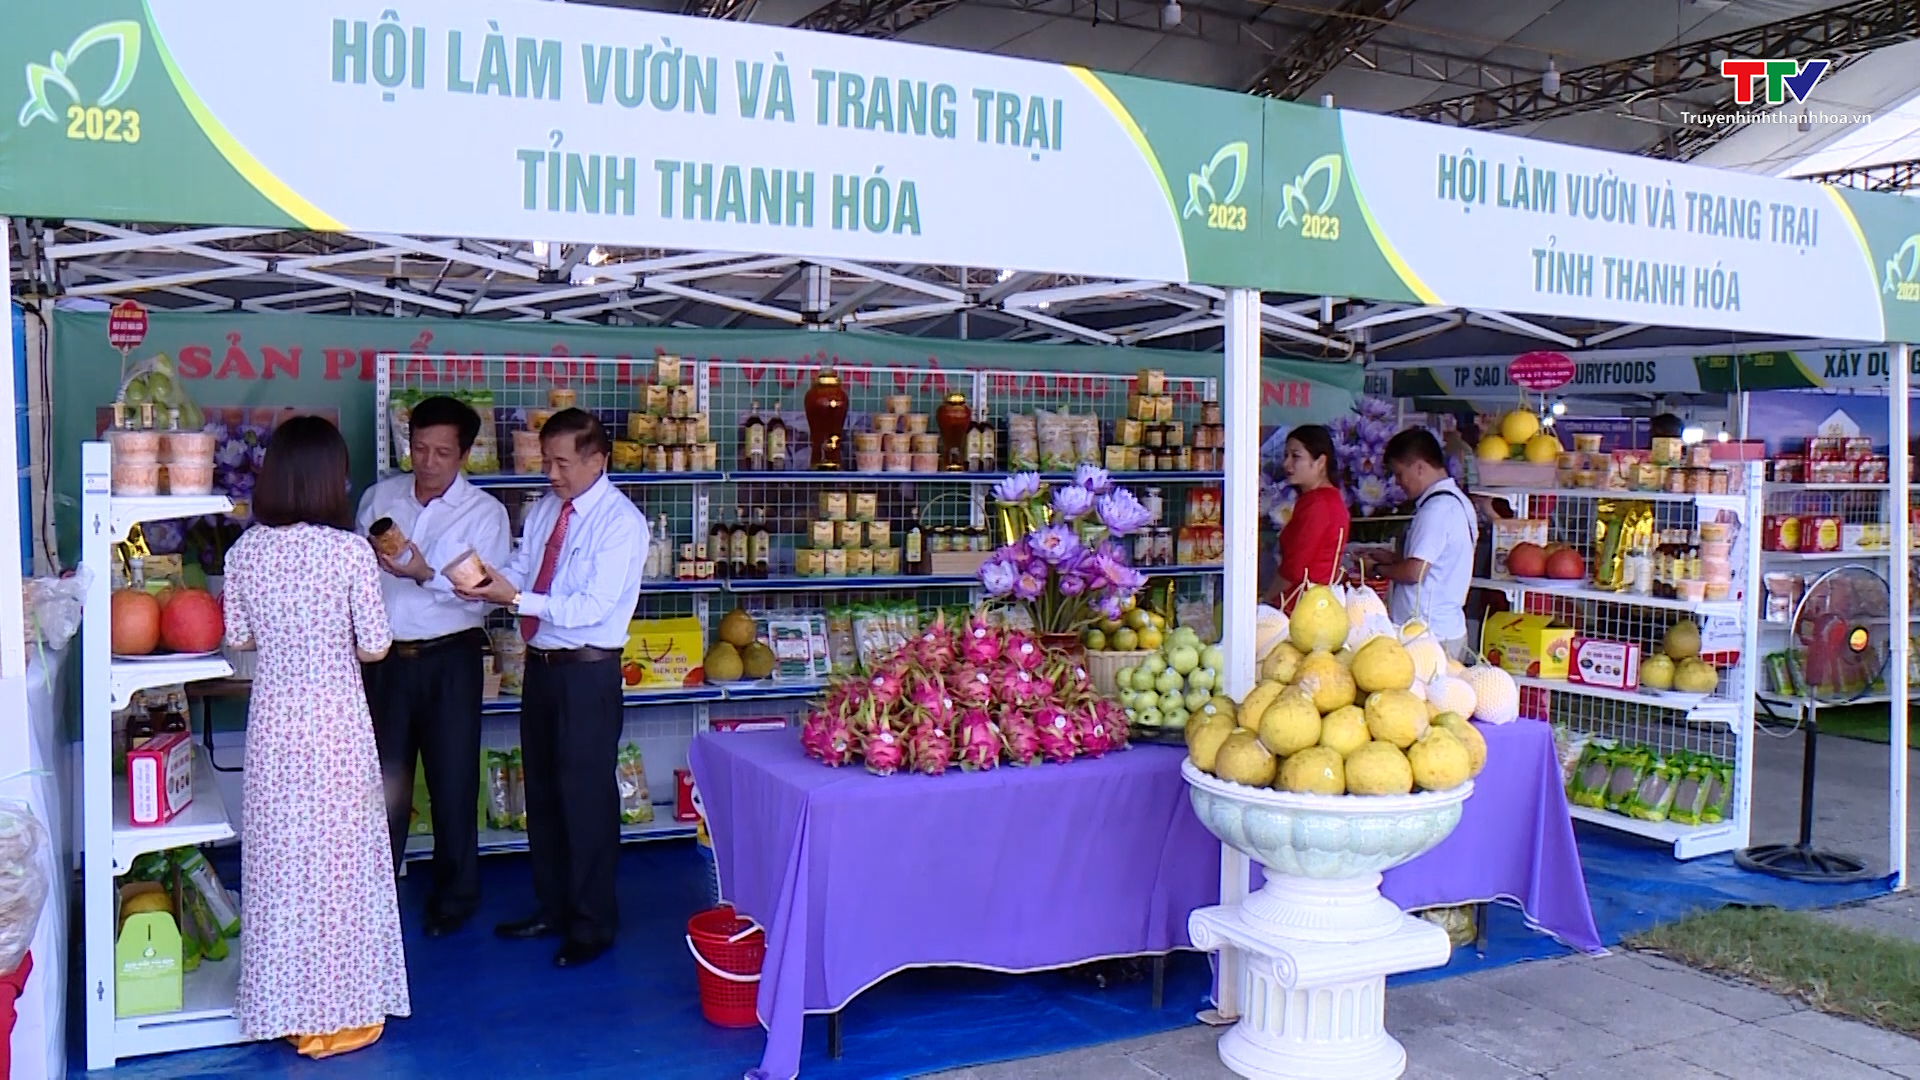 15 tỷ đồng Doanh thu bán hàng tại đợt trưng bày, giới thiệu sản phẩm nông sản thực phẩm an toàn tỉnh Thanh Hóa năm 2023- Ảnh 1.